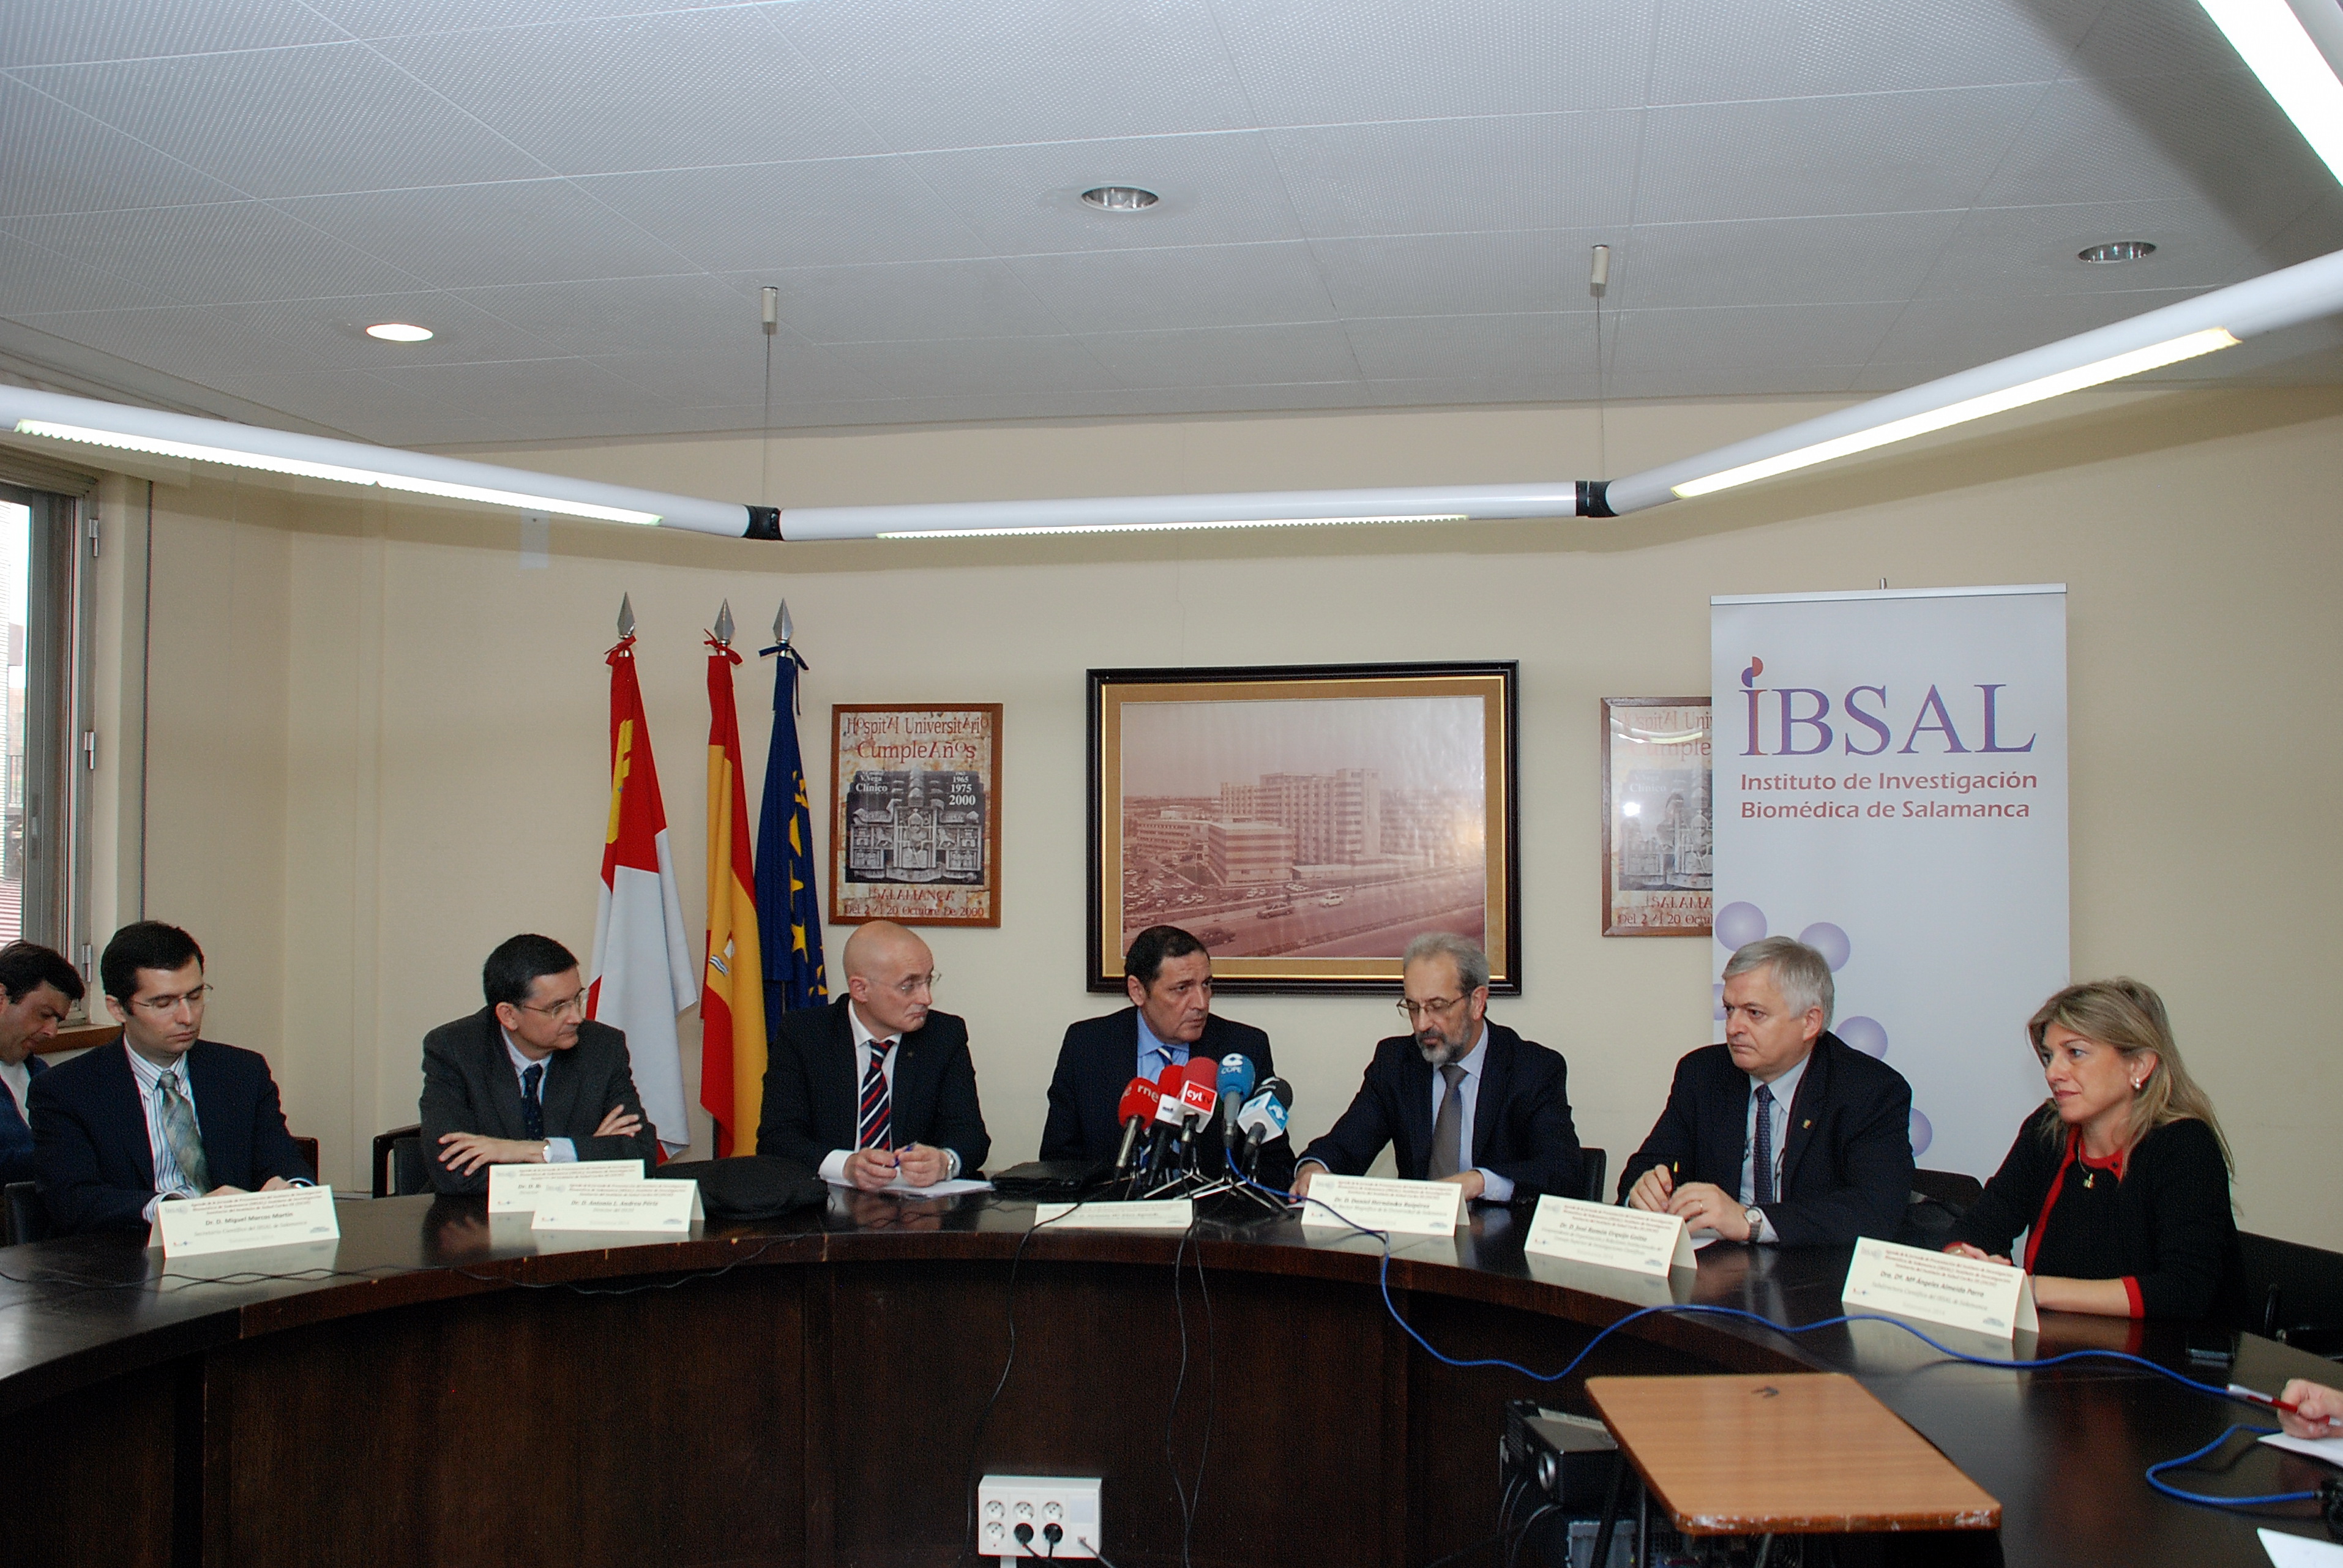 El rector asiste a la jornada de presentación del Instituto de Investigación Biomédica de Salamanca